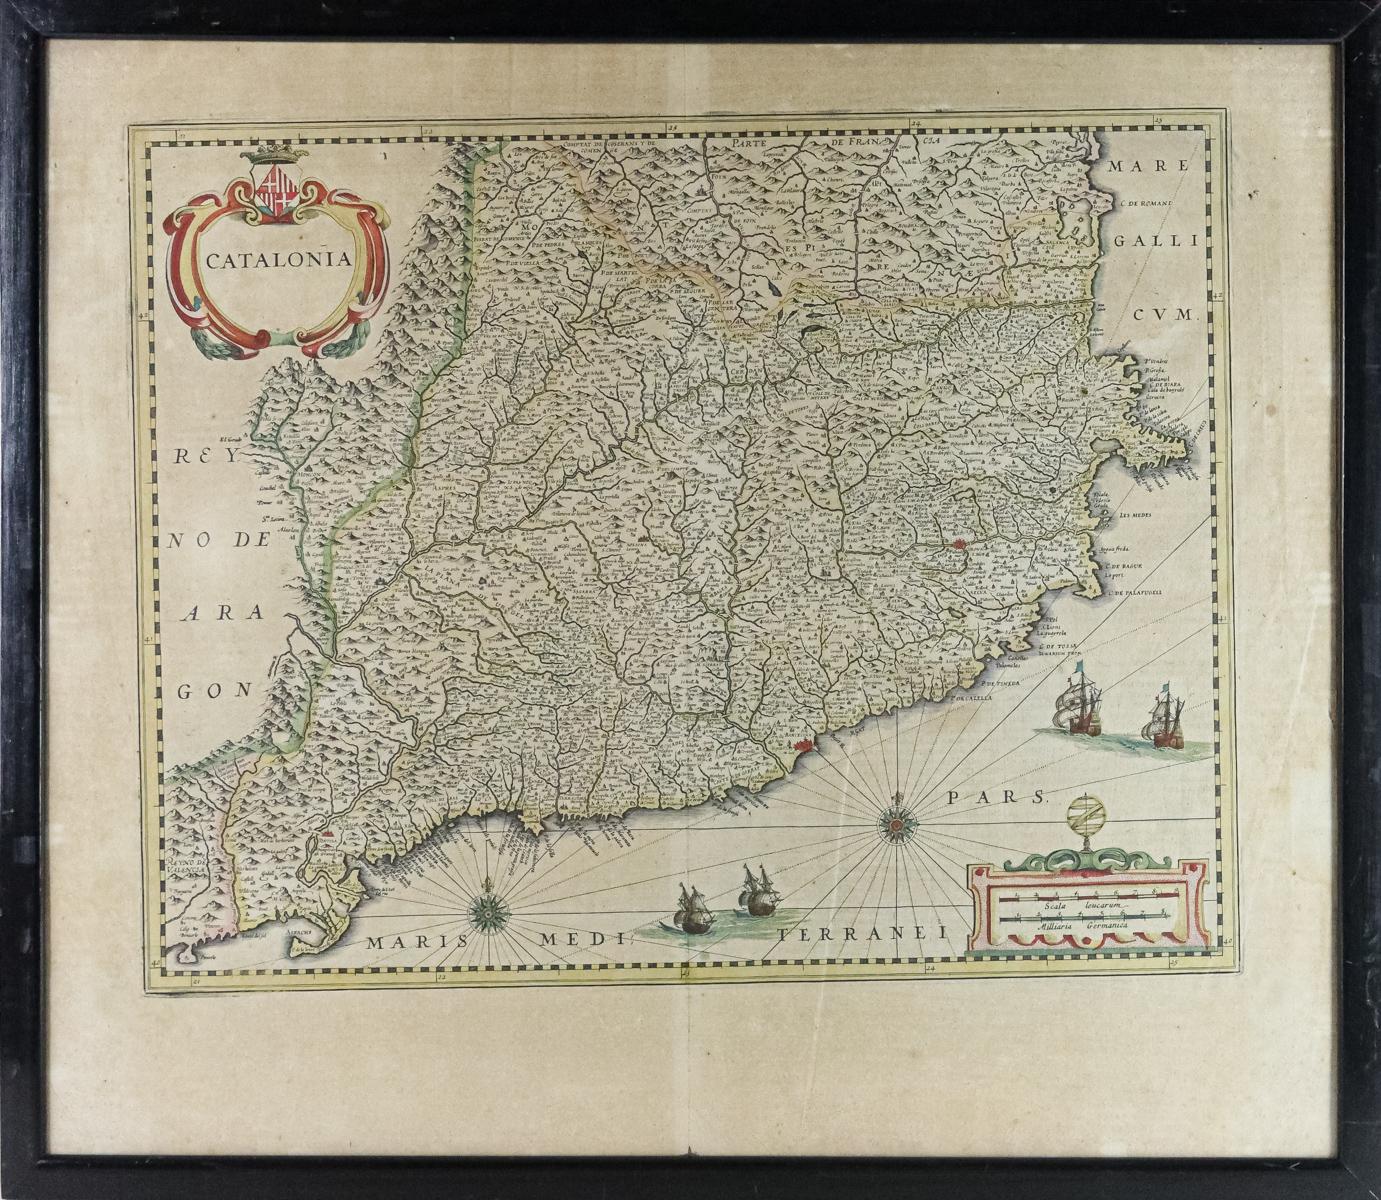 MAPA DE CATALUÑA JOHANNES JANSSONIUS DE 1647